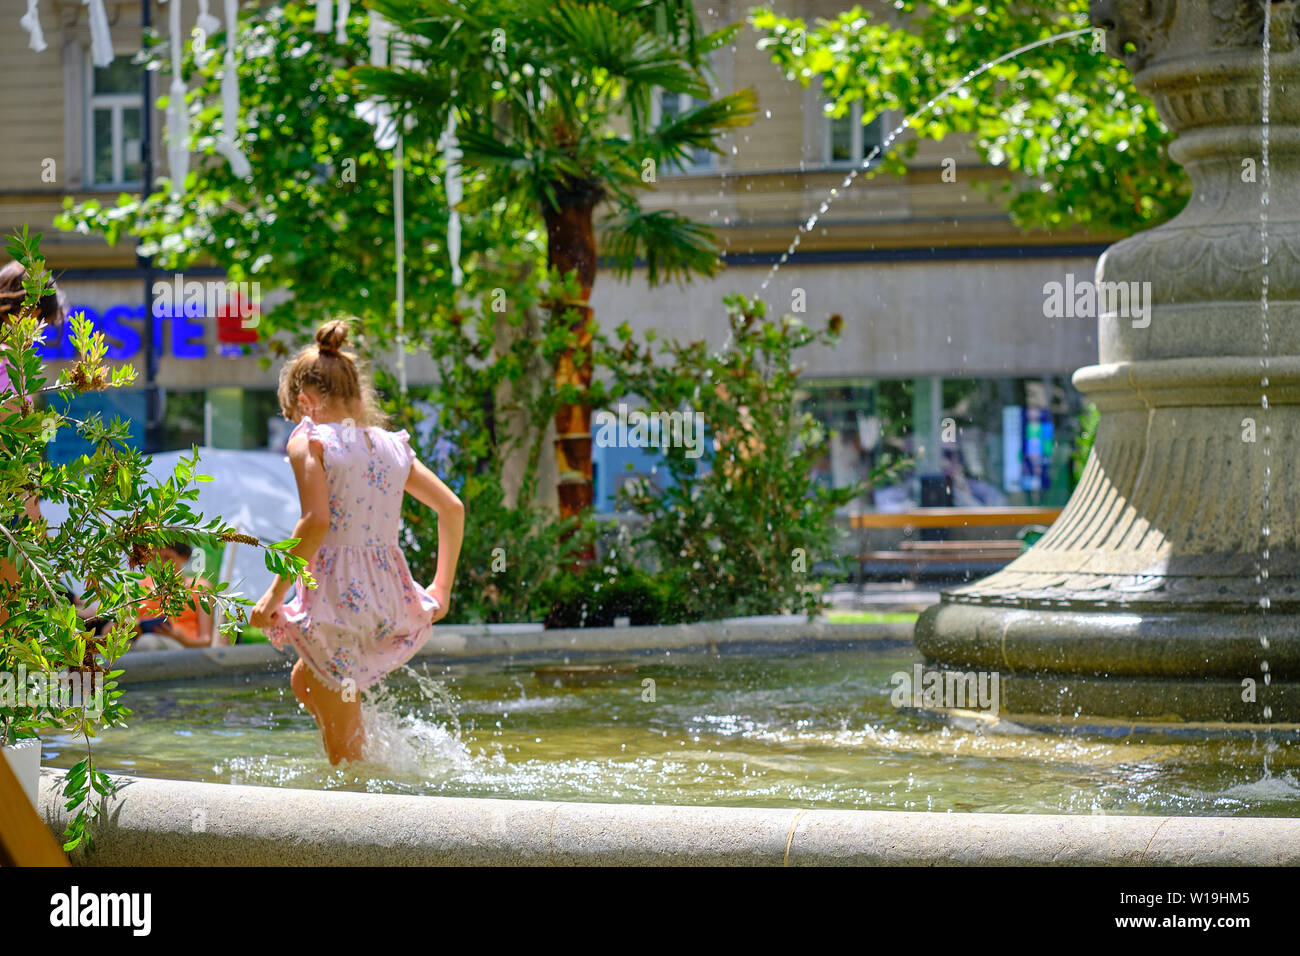 Junge Mädchen in einem Sun dress Spielen im Park Brunnen. Überspringen im kniehohen Wasser, ihre Sonne Kleid an heißen, sonnigen Tag Holding in Zagreb Stockfoto